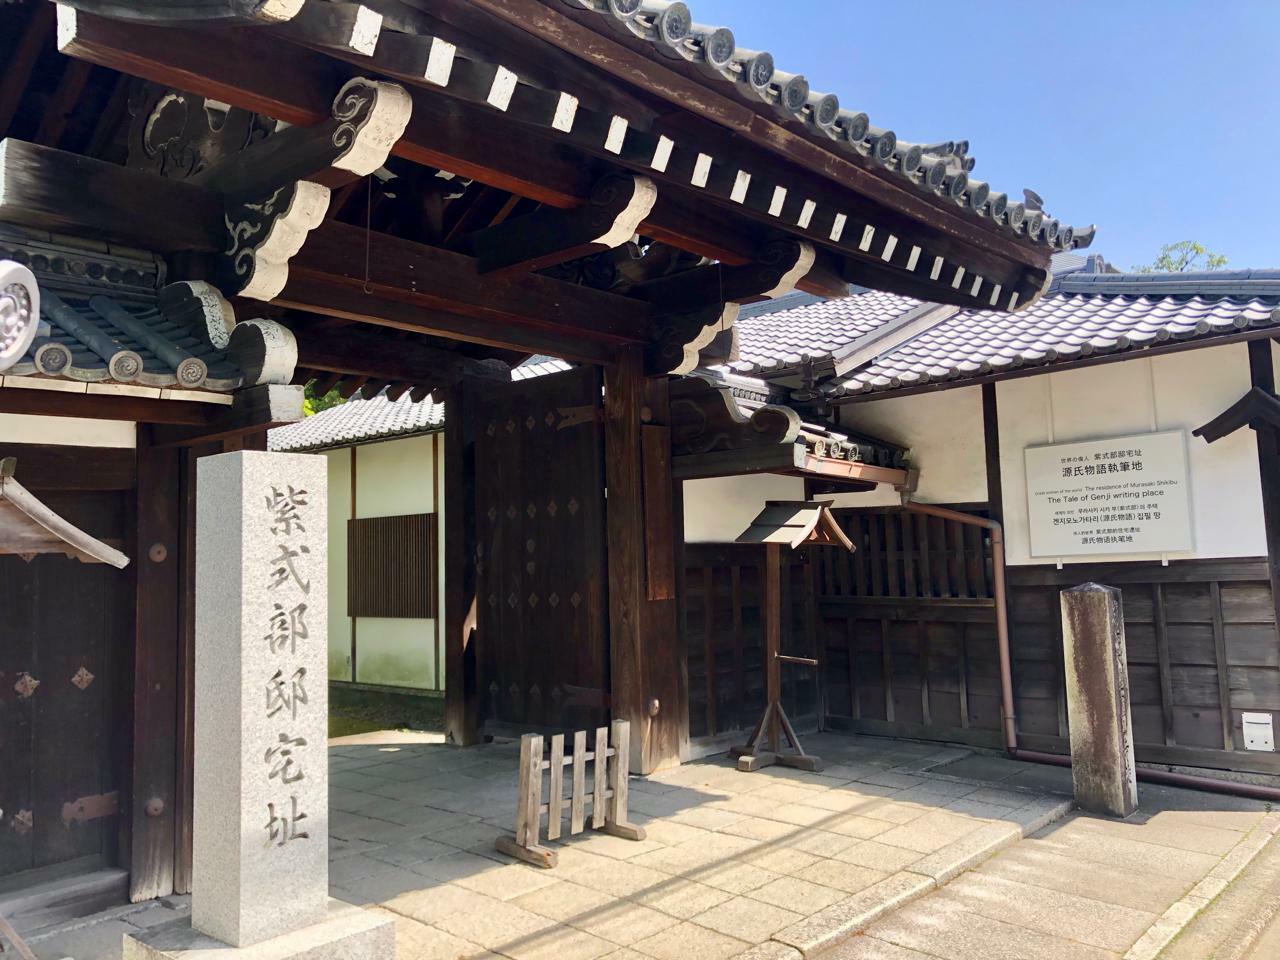 入り口前にも大きく「紫式部邸跡」「源氏物語執筆地」とあります。